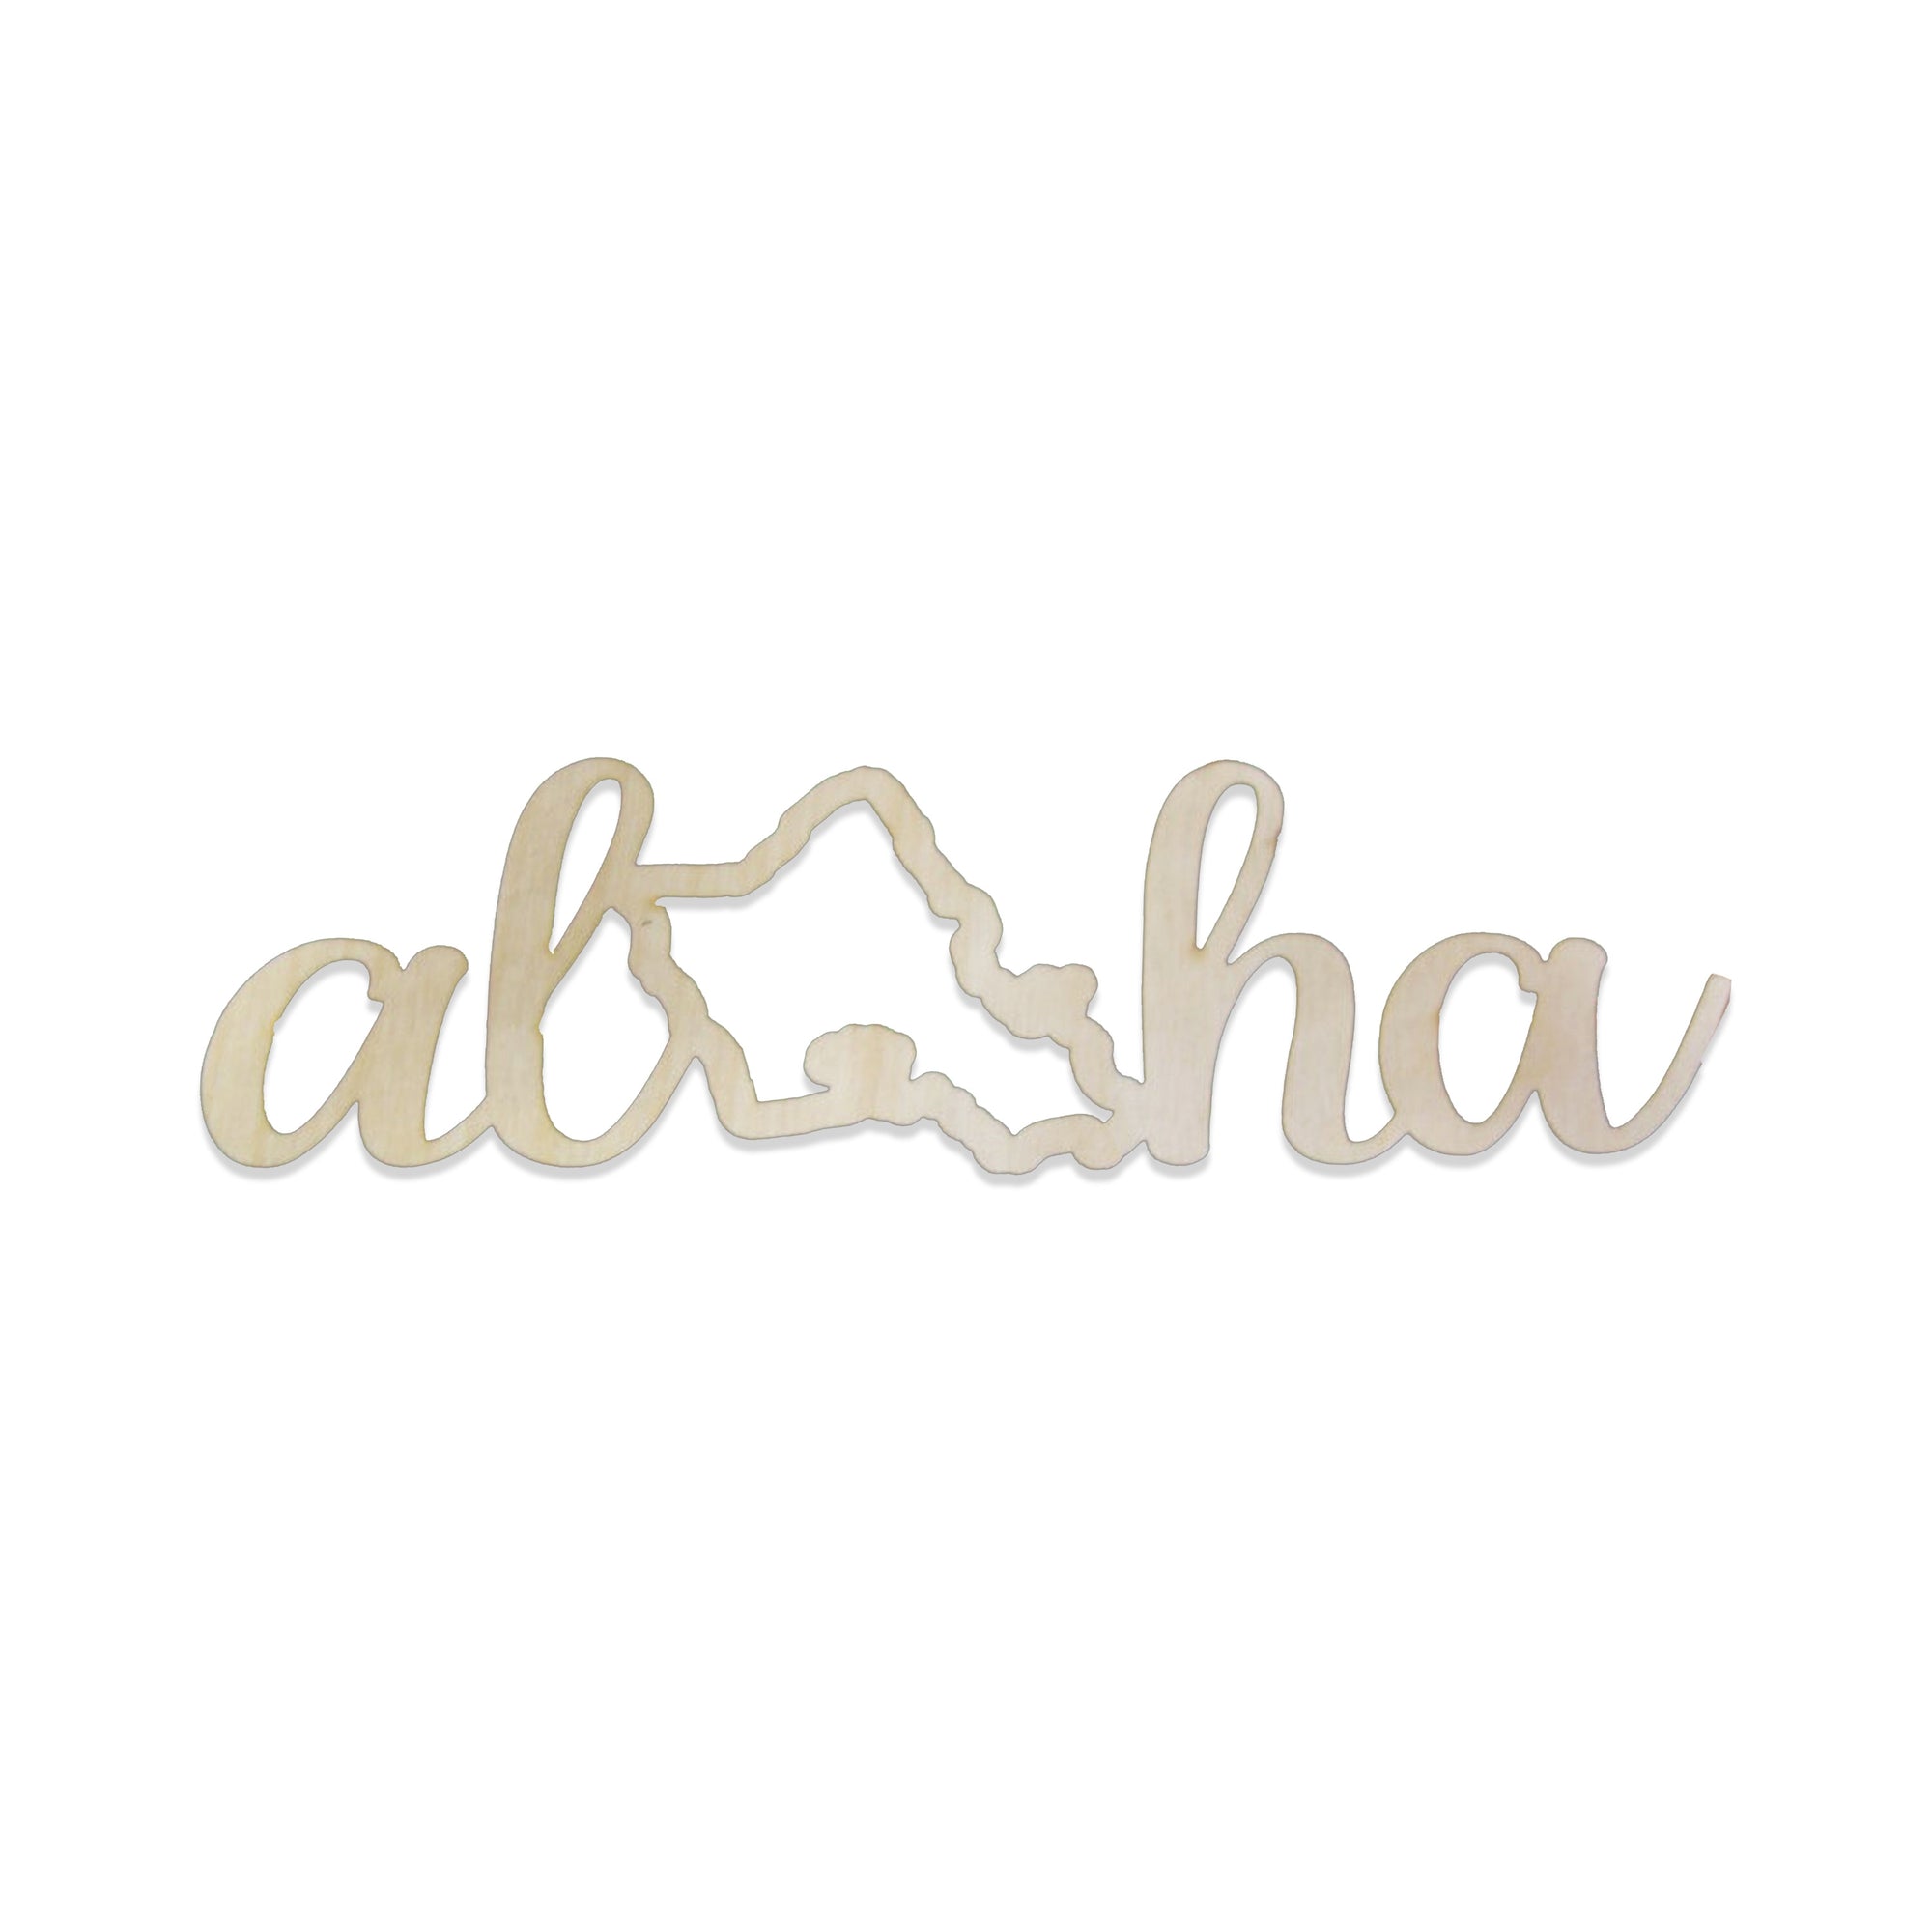 Pop-Up Mākeke - Aloha Overstock - Laser Cut Aloha O'ahu Wood Cutout